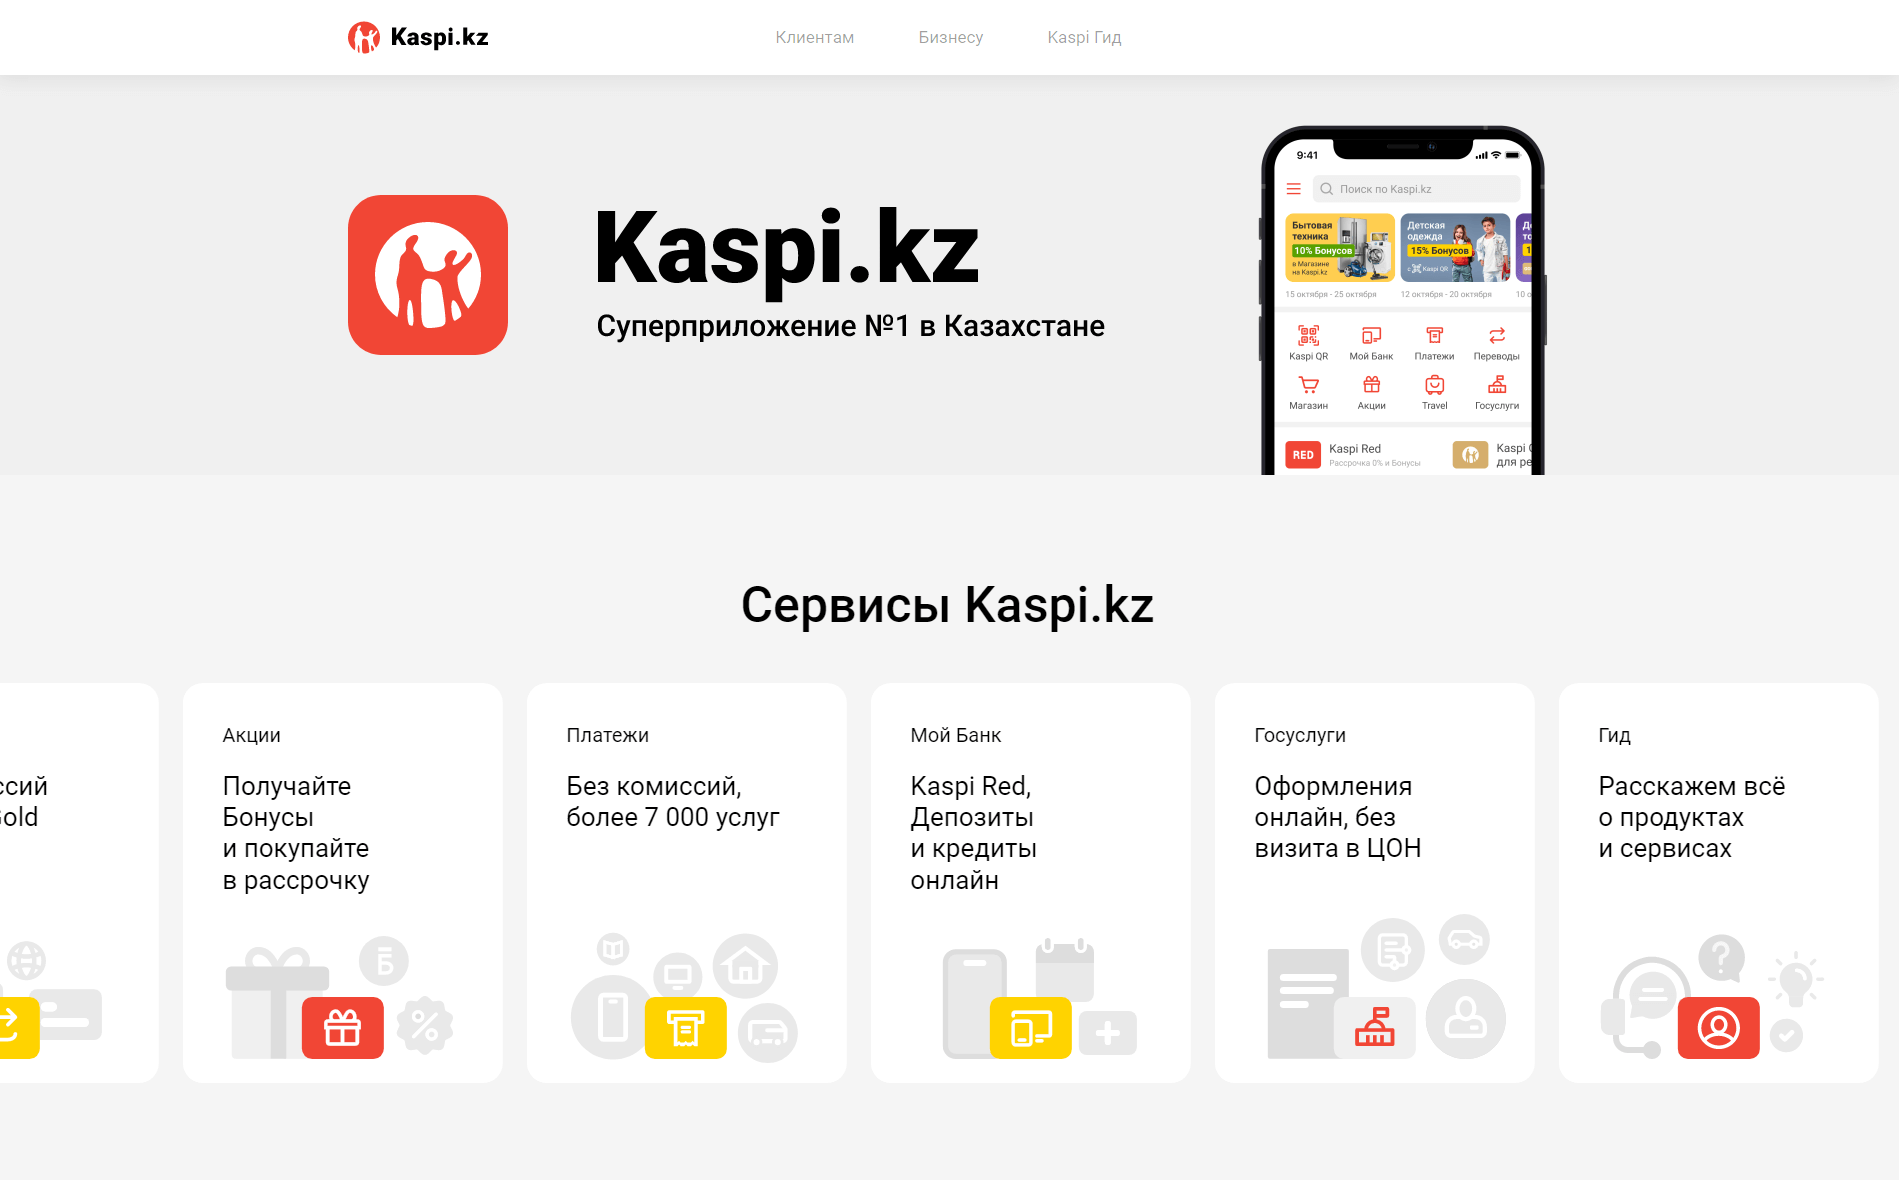 Главная страница официального сайта Kaspi.kz